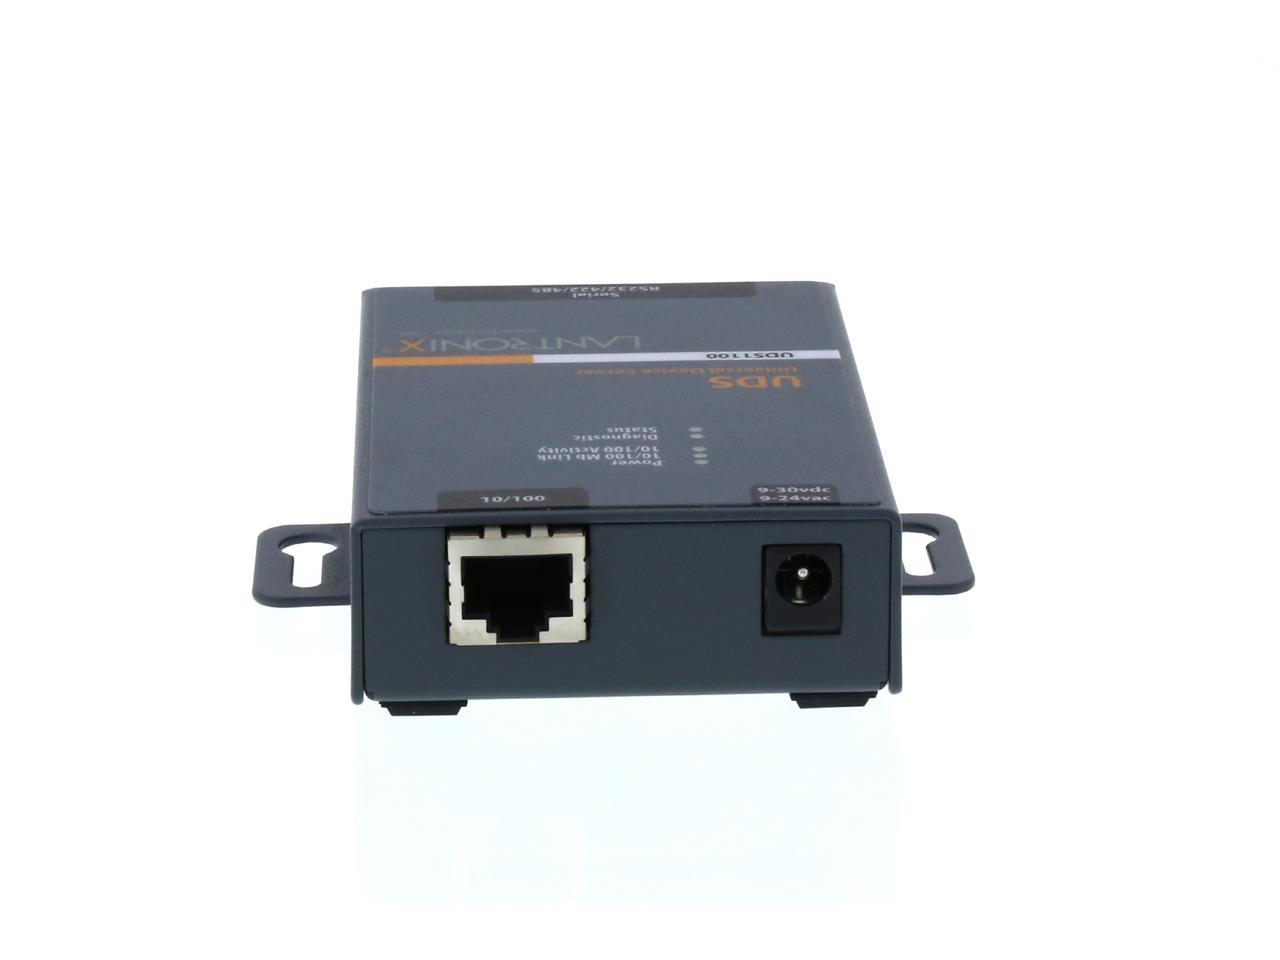 100Mb LAN Lantronix Industrial Device Server UDS1100-IAP 10Mb LAN Device server UD1100IA2-01 RS-232 